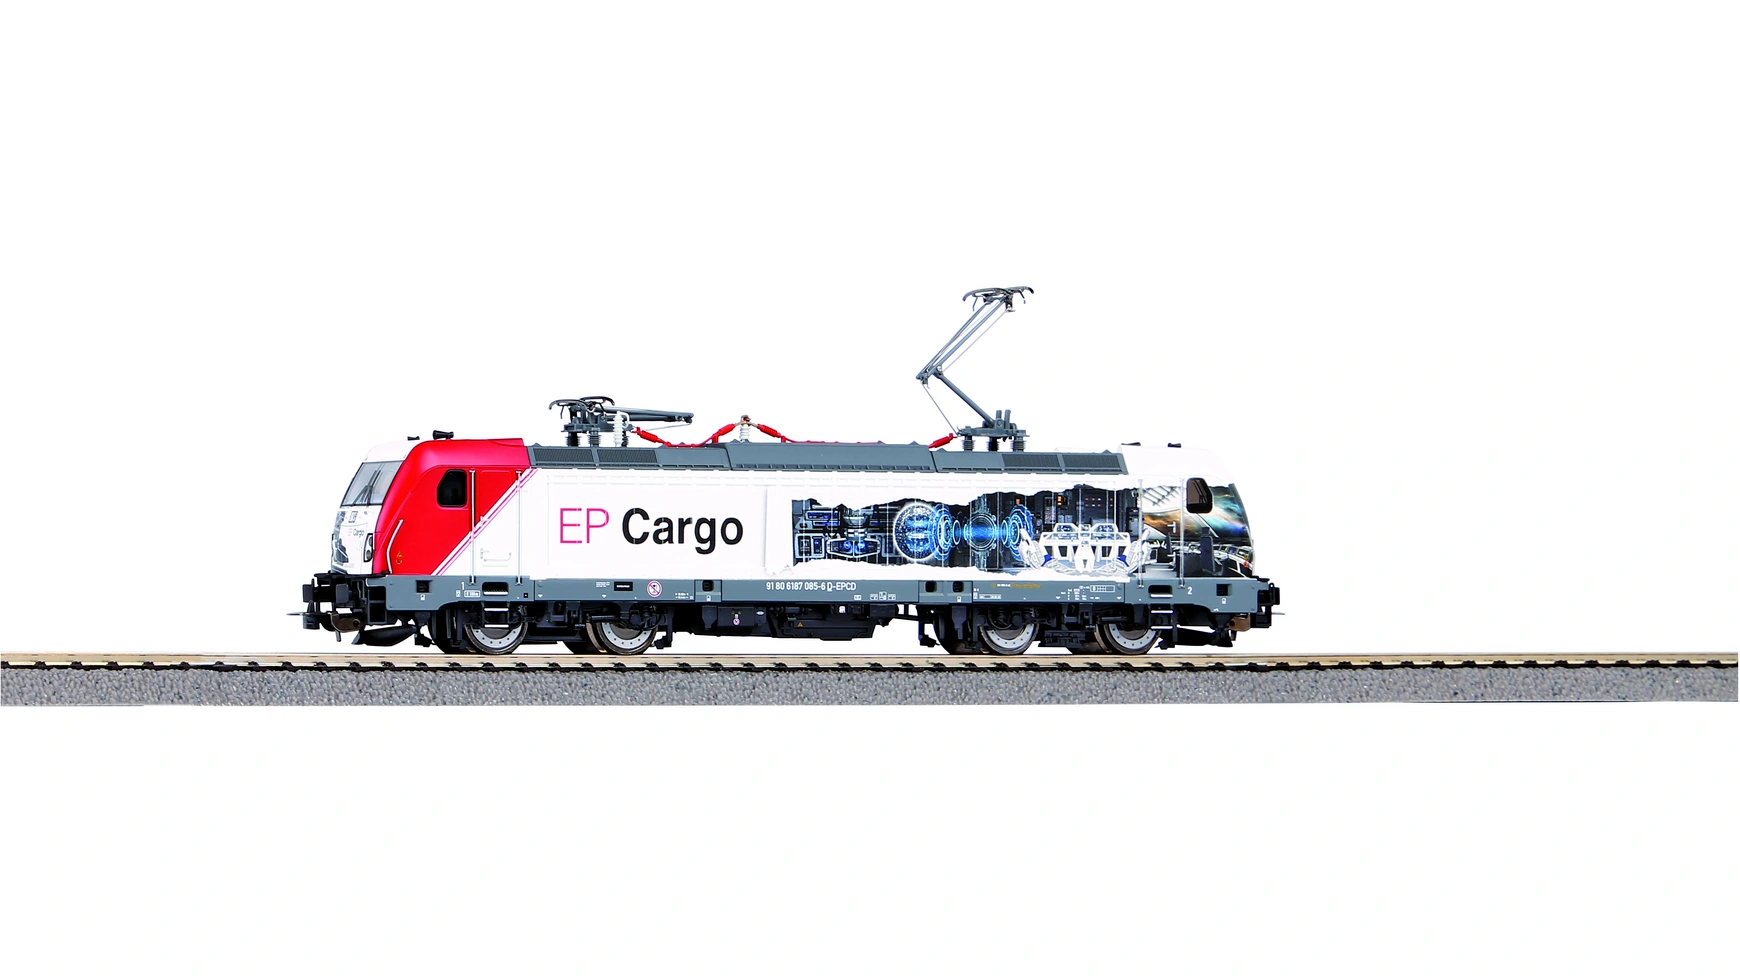 Piko Электровоз BR 187 EP Cargo VI технопарк электровоз металл 15 см локомотив игрушка игрушечный электровоз металлическая модель